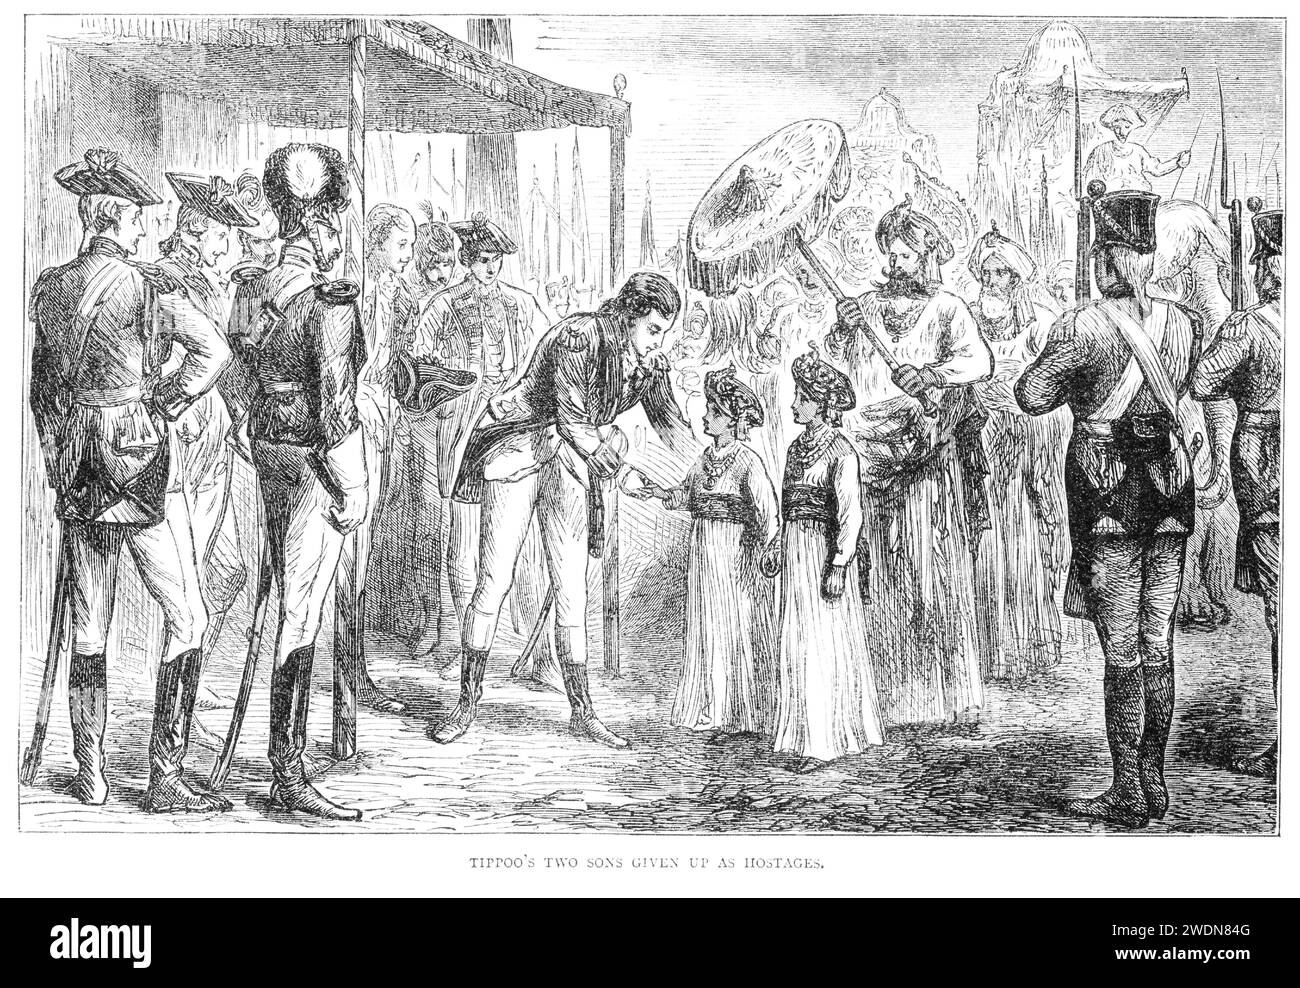 Die beiden Söhne von Tipu Sahib, Sultan von Mysore, wurden als Geiseln an General Cornwallis übergeben. Dieses Ereignis beendete den dritten Anglo-Mysore-Krieg. Lord Cornwallis hatte Tipu im Mai 1791 besiegt, aber der „endgültige Vertrag“ wurde erst im März 1792 unterzeichnet, als zwei von Tipus Söhnen von den Briten als vorübergehende Geiseln genommen wurden, um die Einhaltung des vertrags sicherzustellen. Bild veröffentlicht 1904. Stockfoto